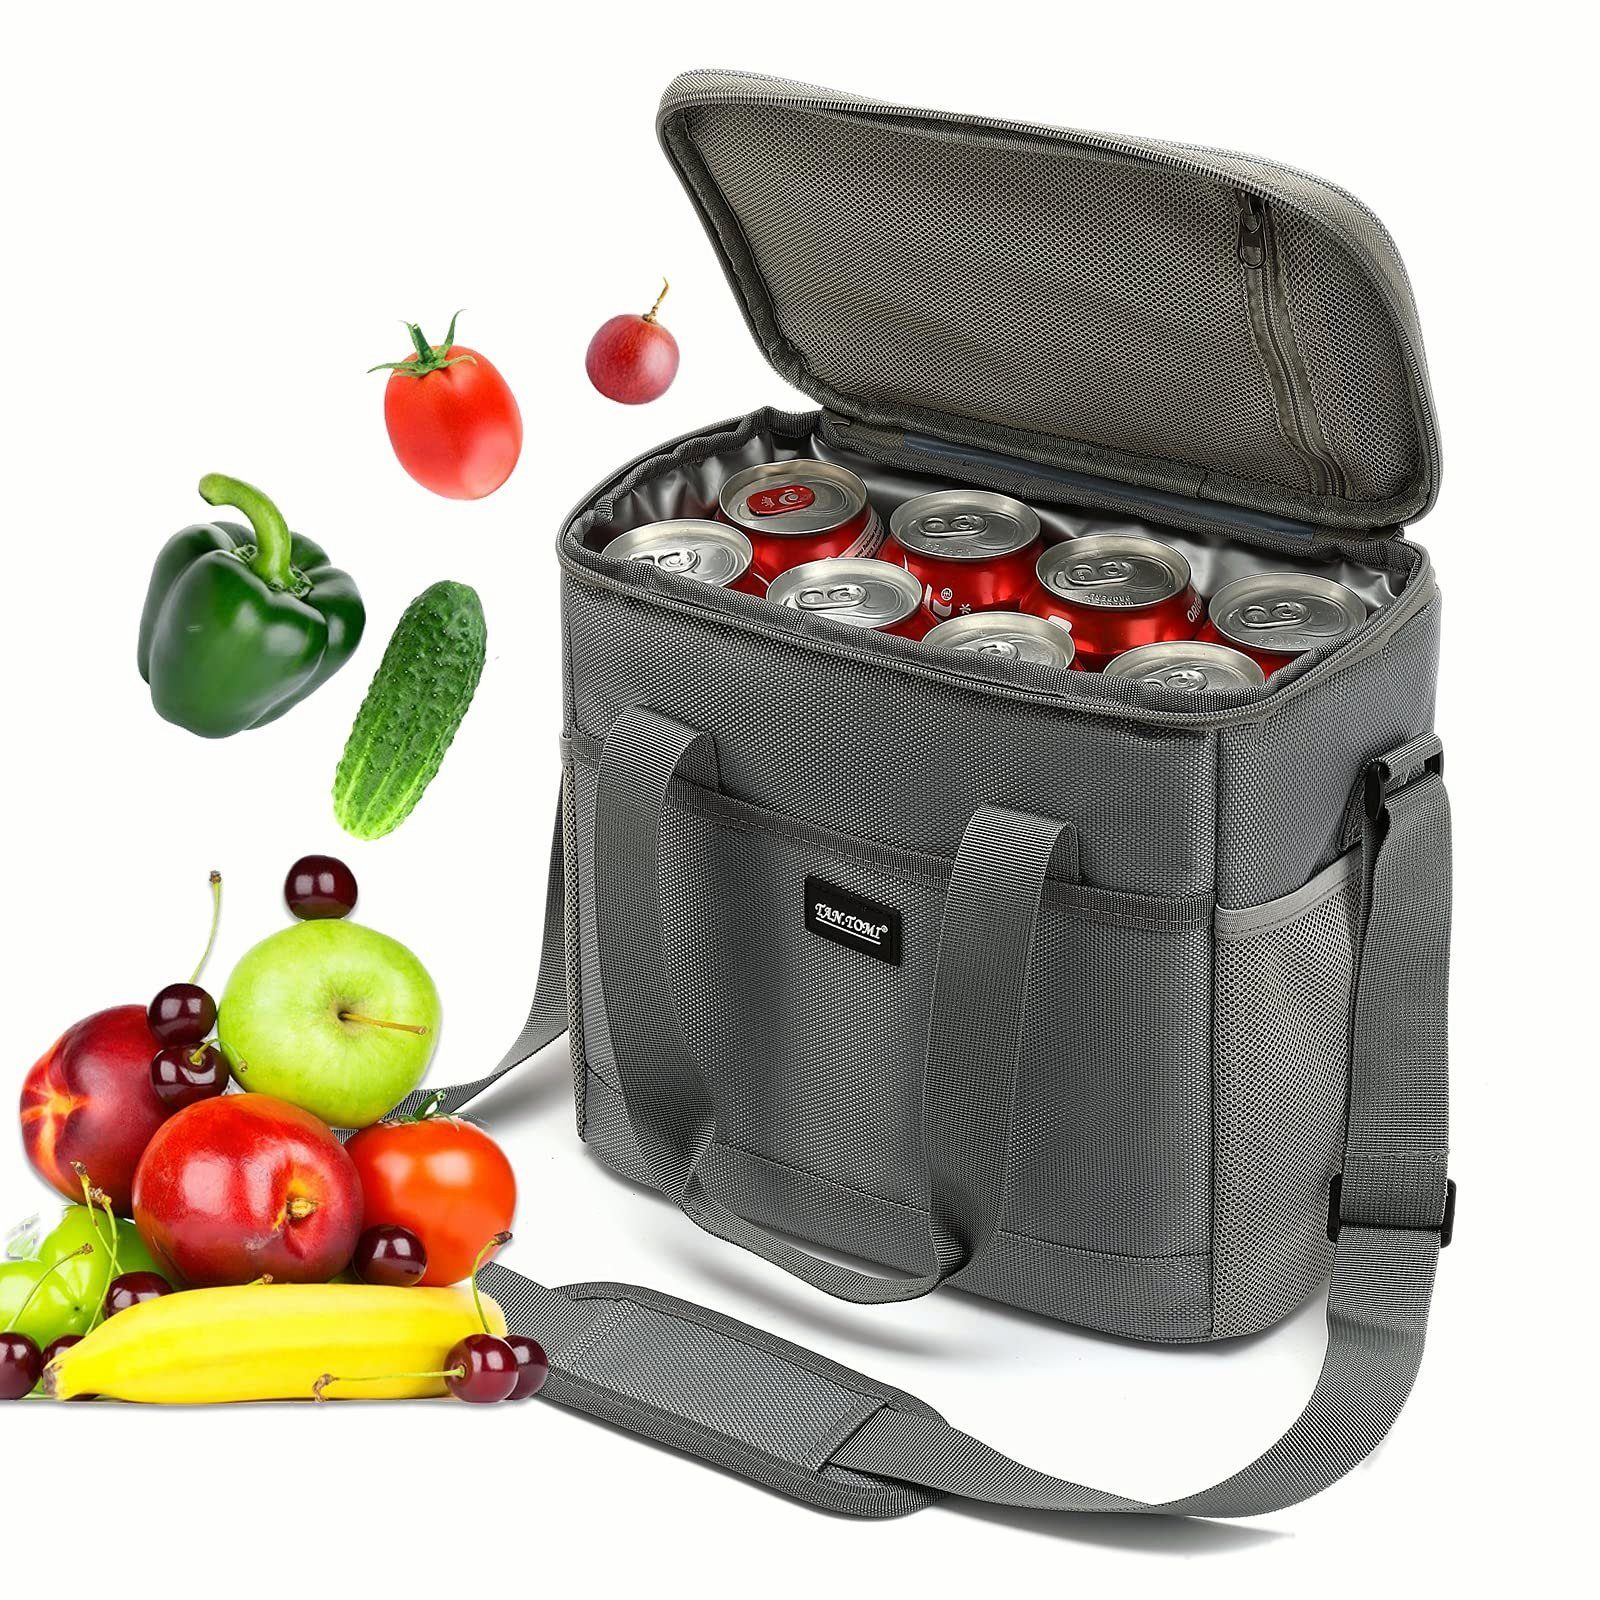 TAN.TOMI Picknickkorb Lunchtasche Kühltasche Isoliertasche Lunchbag Thermotasche, 17.2 Liter, vollständig isoliert, faltbar, angenehmen Griff zum Tragen Grau